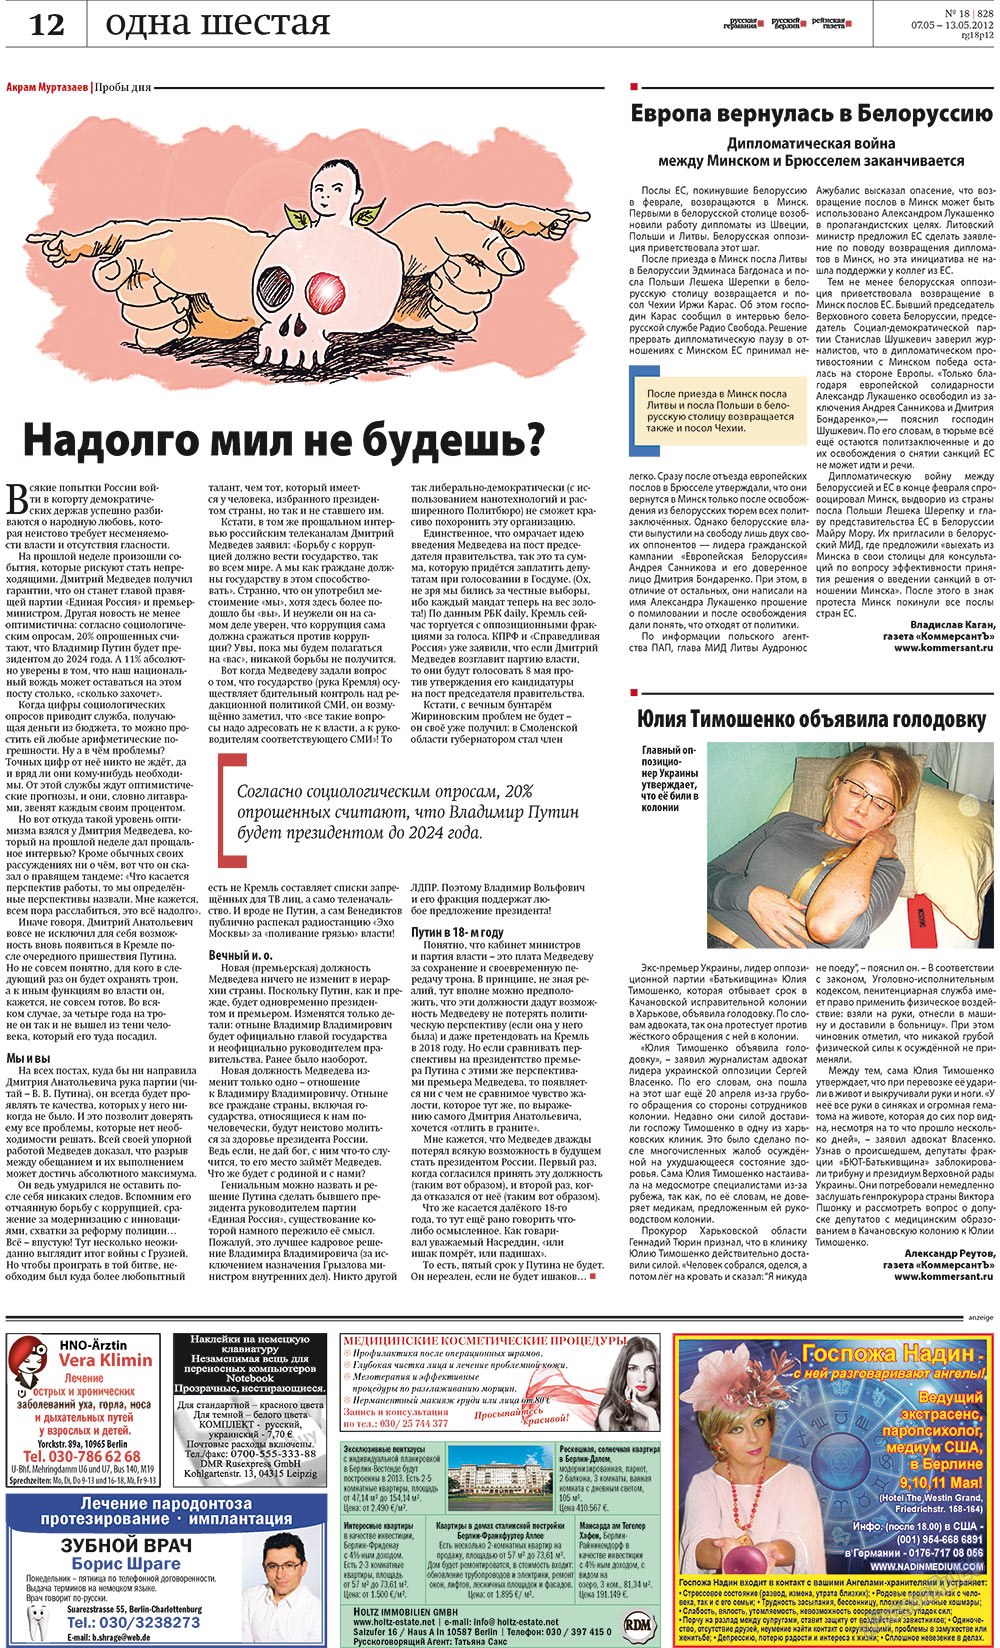 Рейнская газета, газета. 2012 №18 стр.12